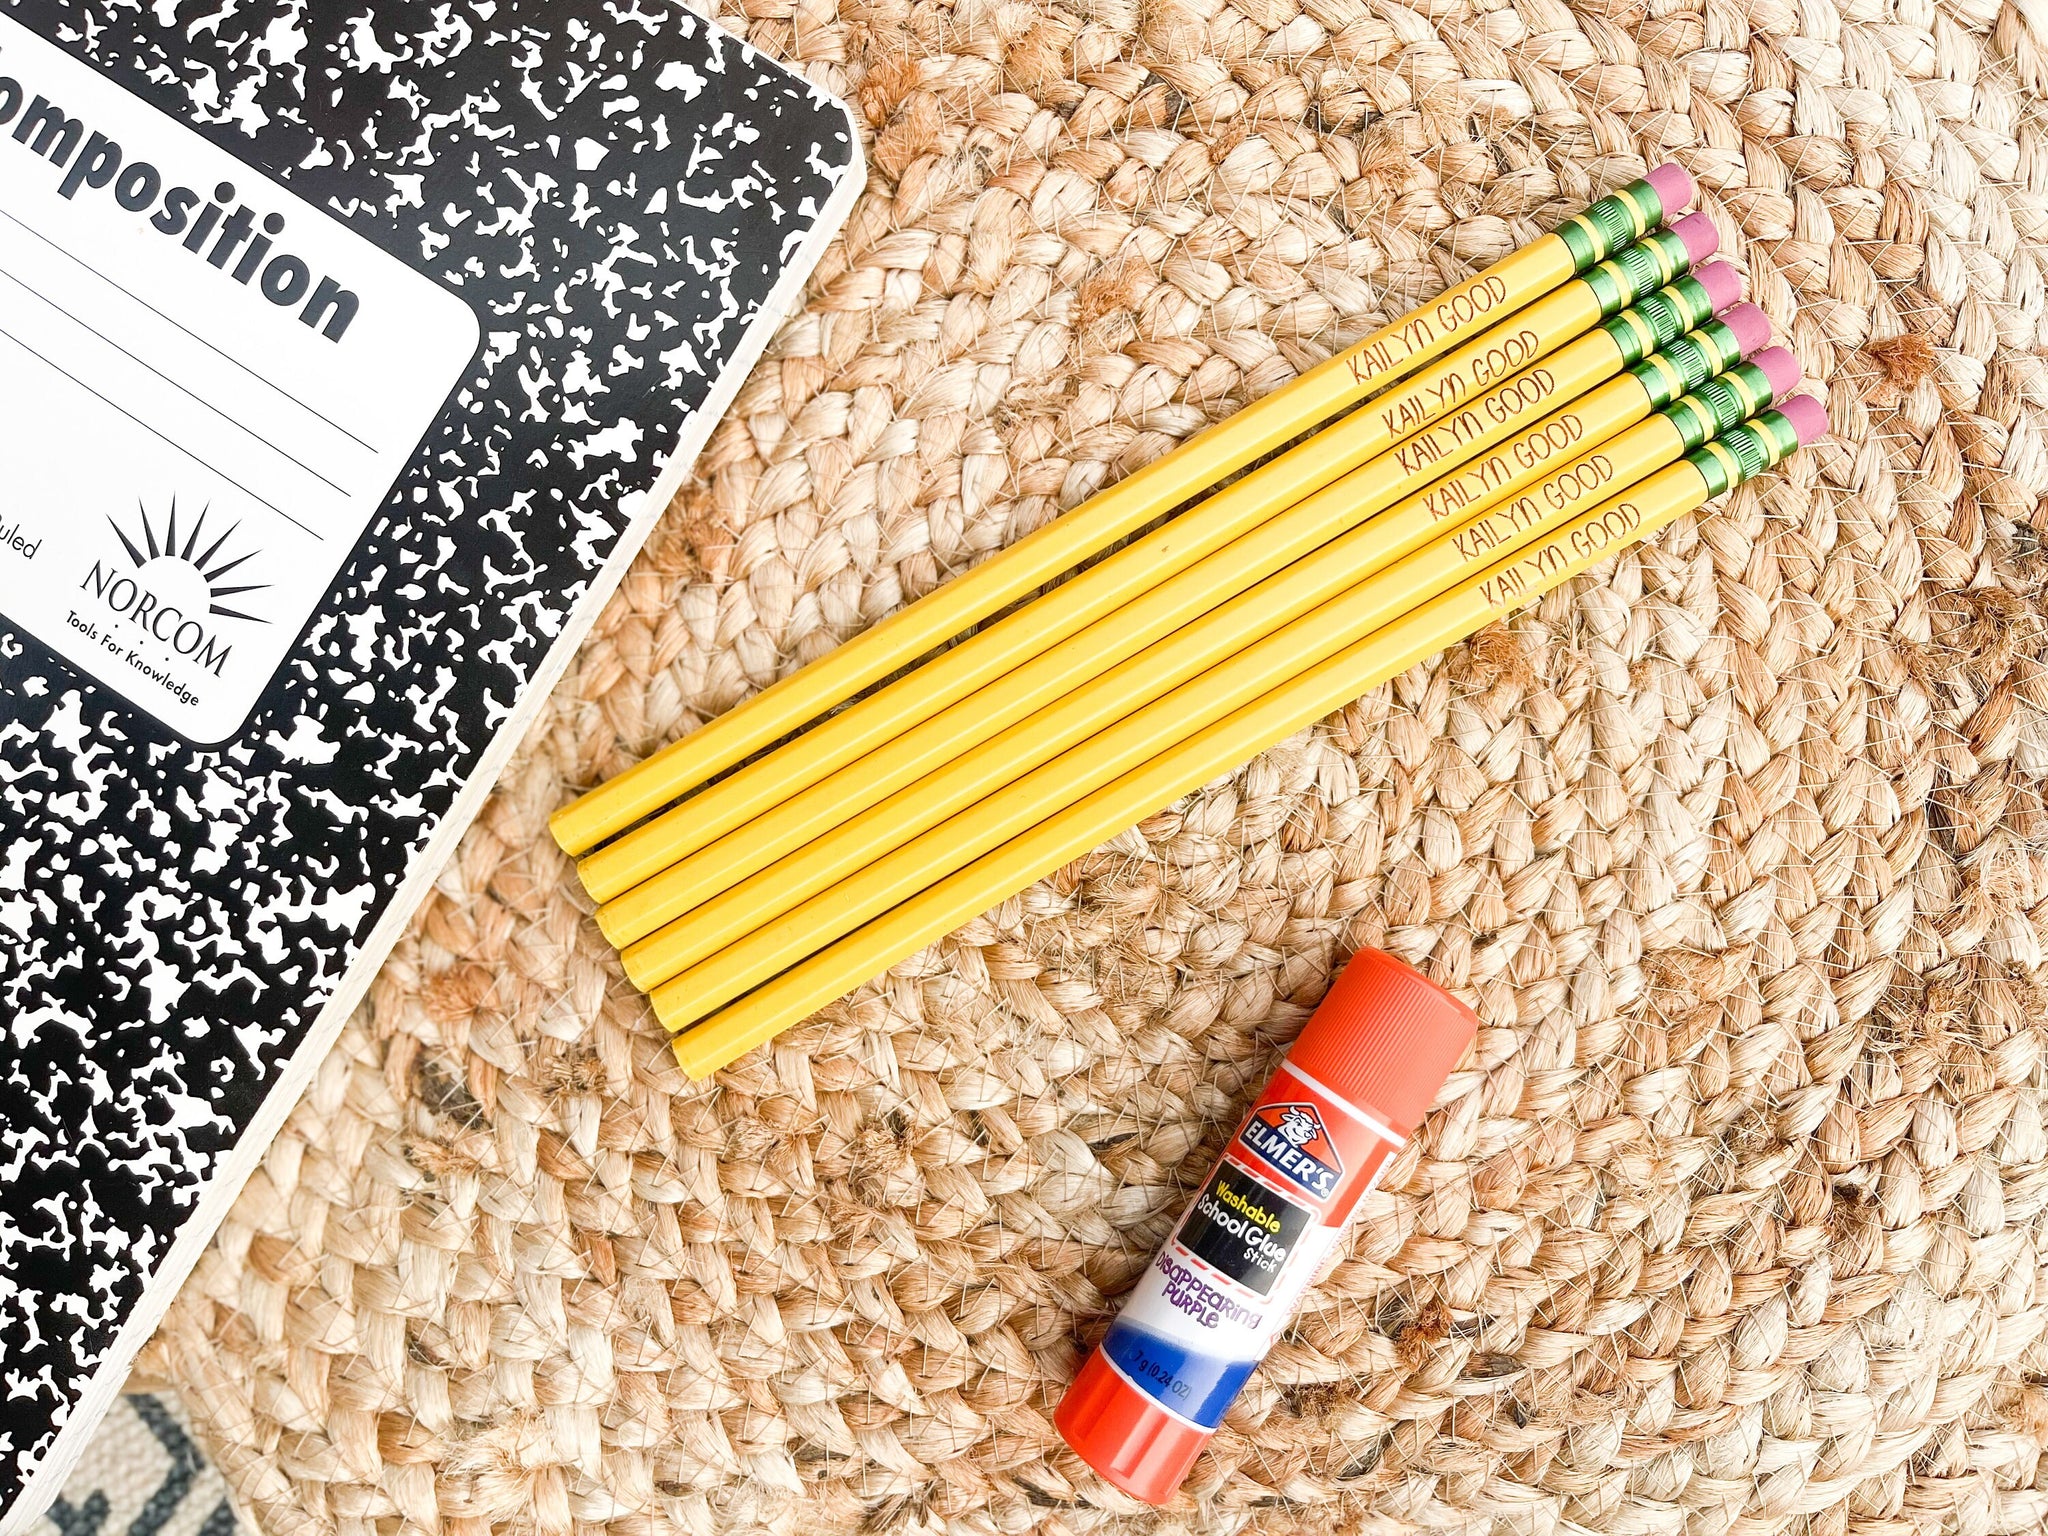 Personalized Ticonderoga pencils